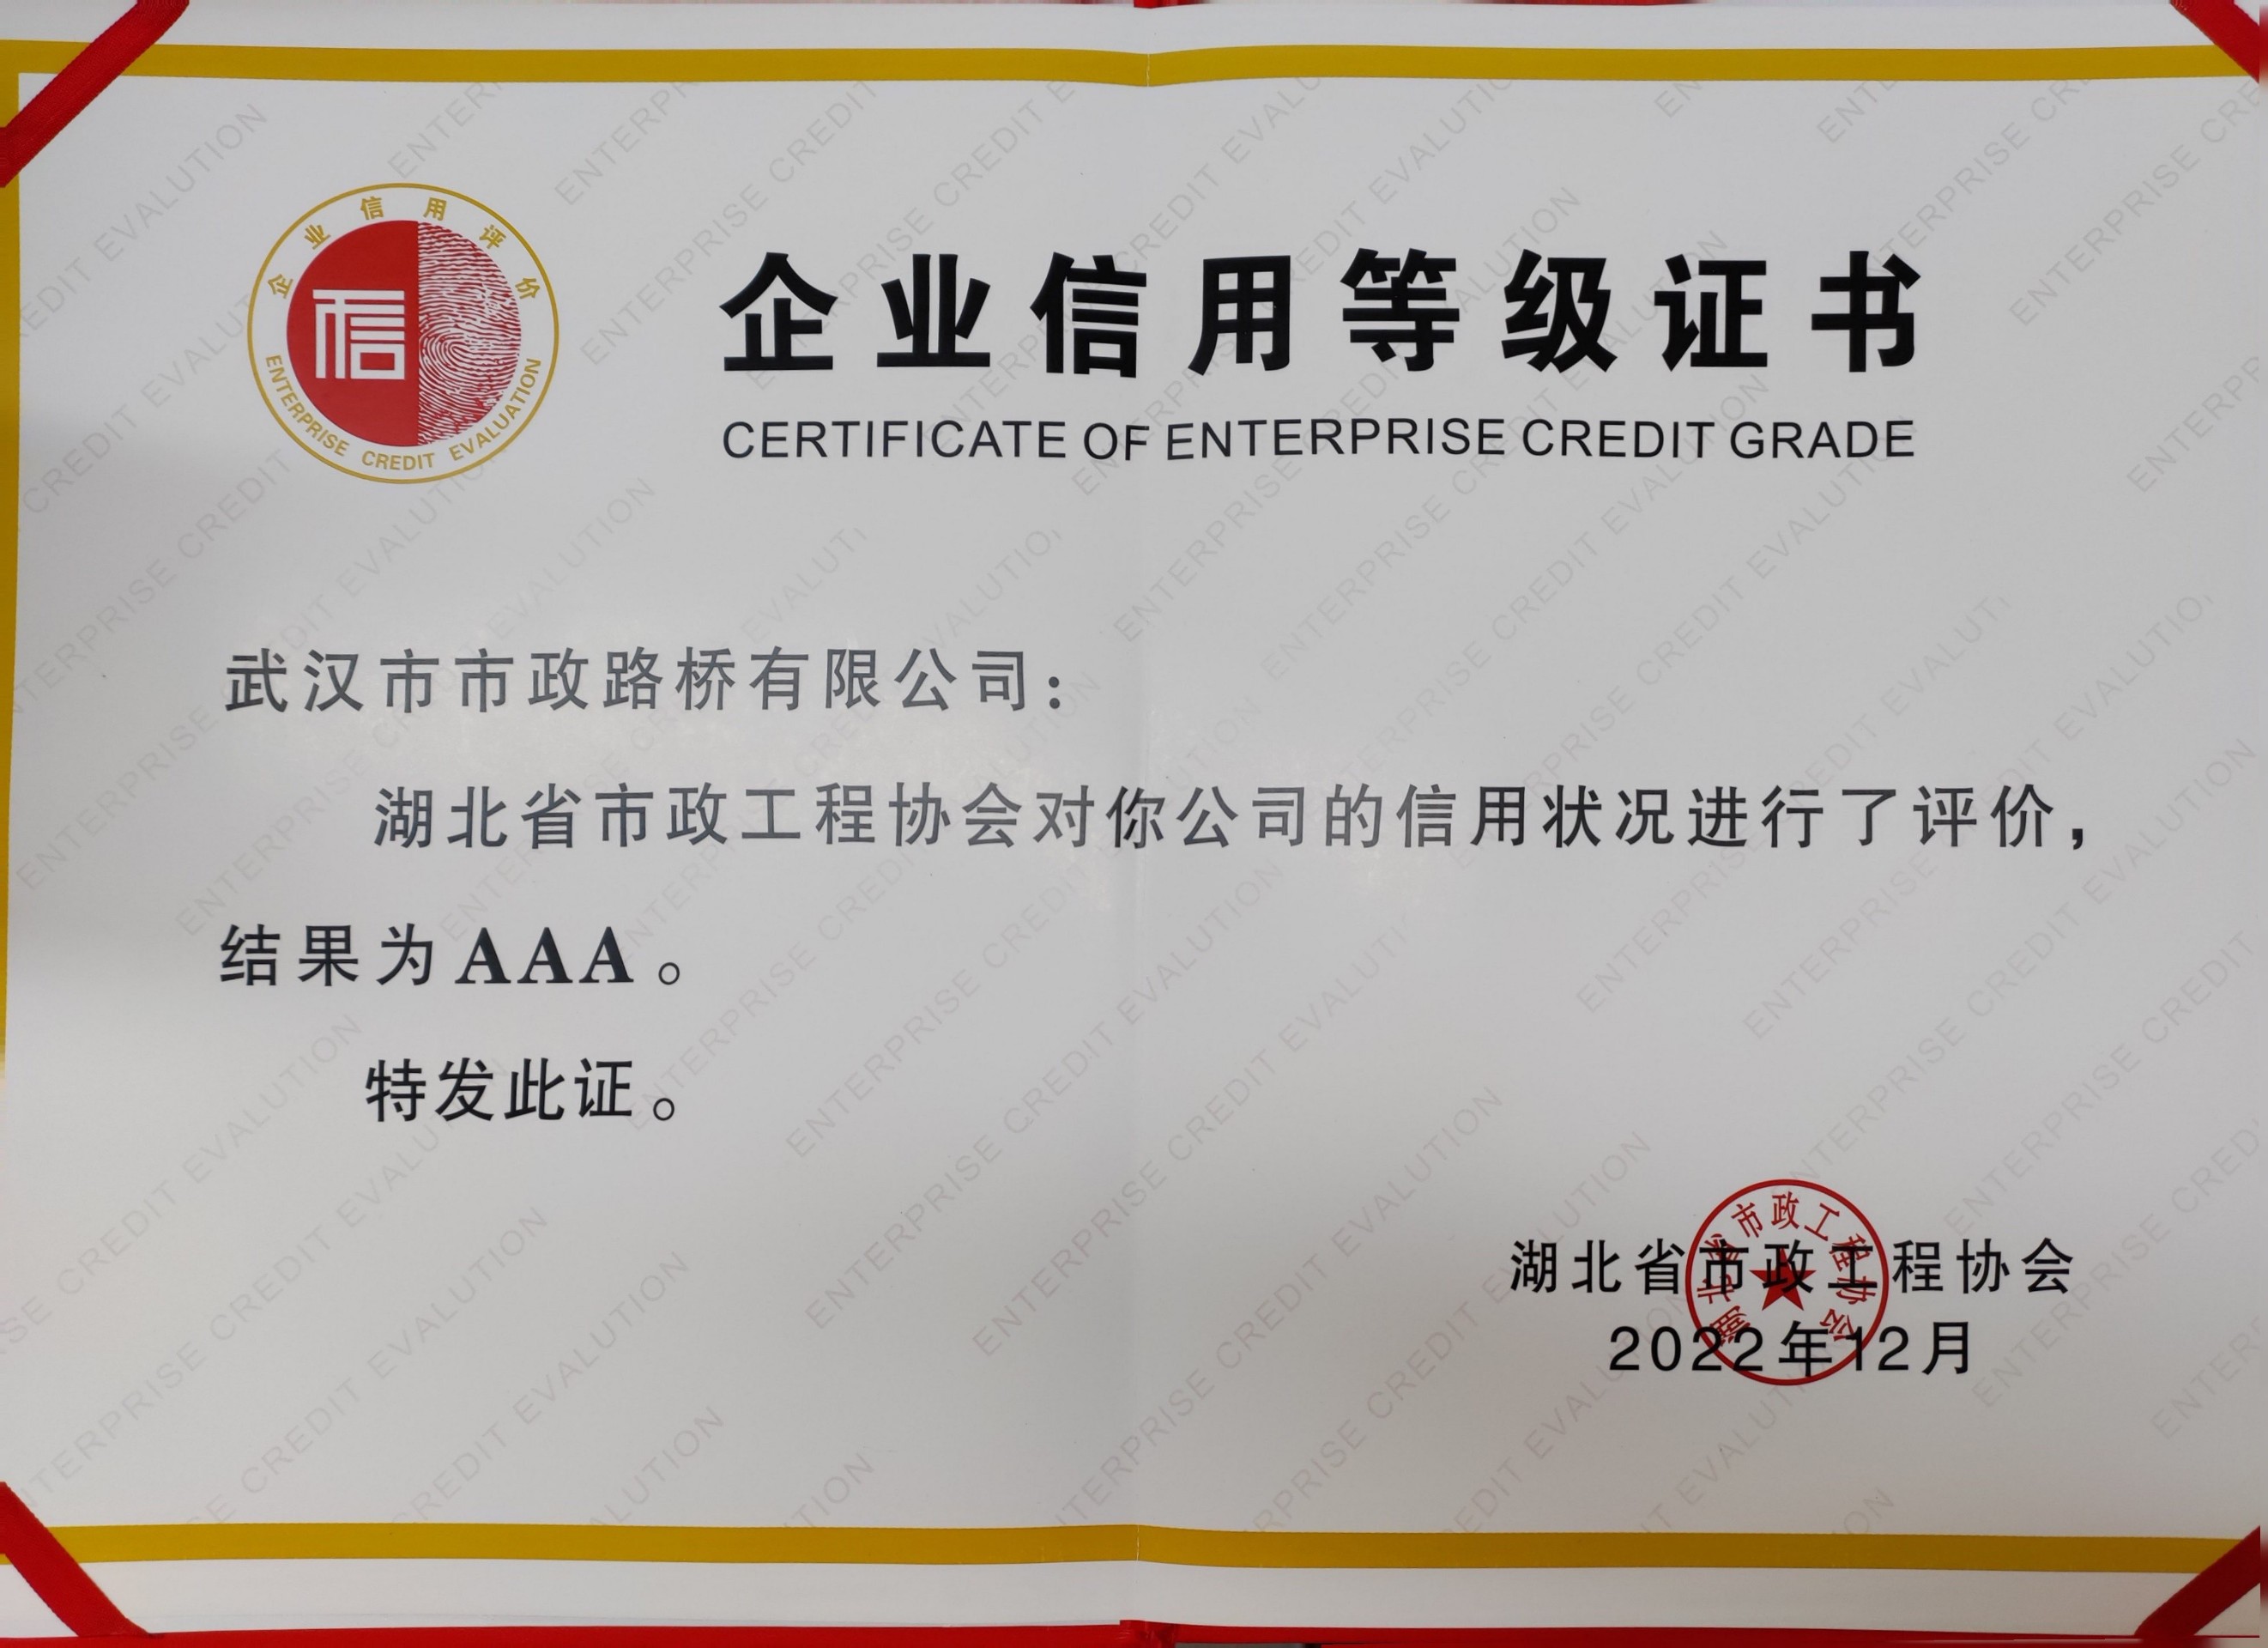 湖北省市政协会AAA信用等级证书